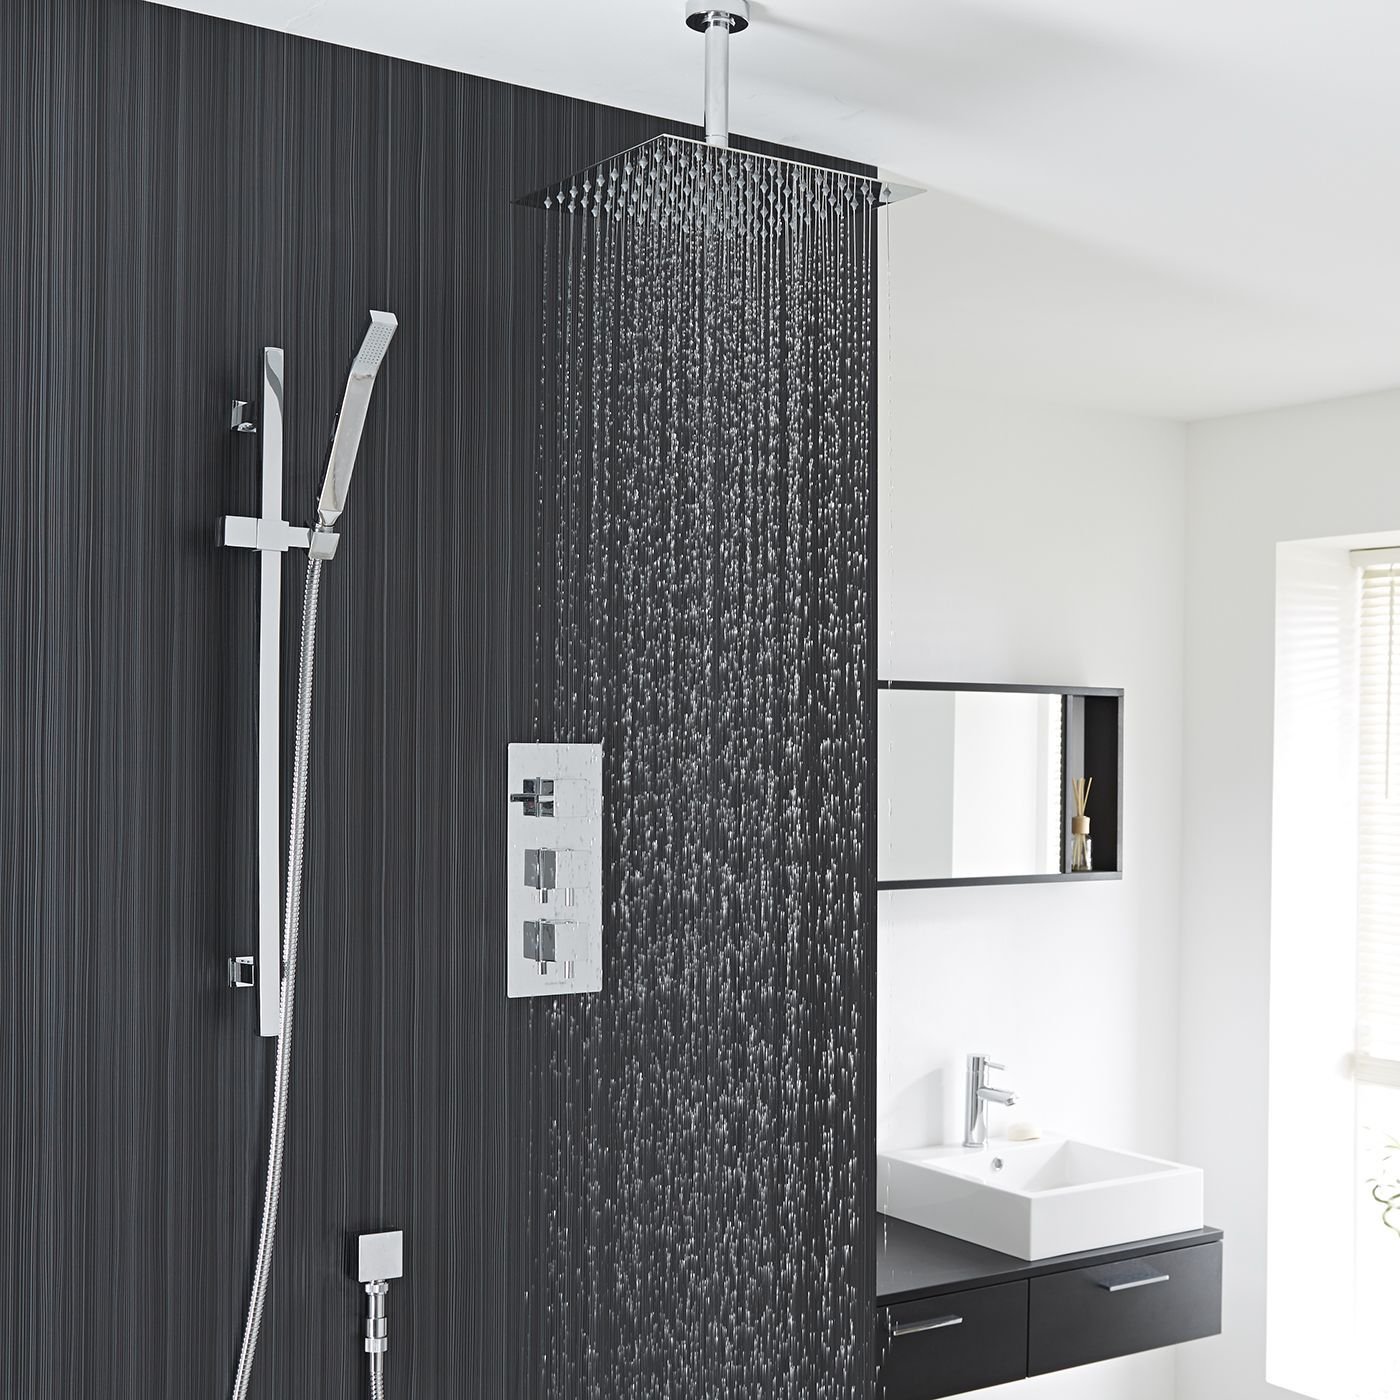 Benete Square Chrome Rain Shower System Faucet Set 2 Outlets Ceiling Head & Handset